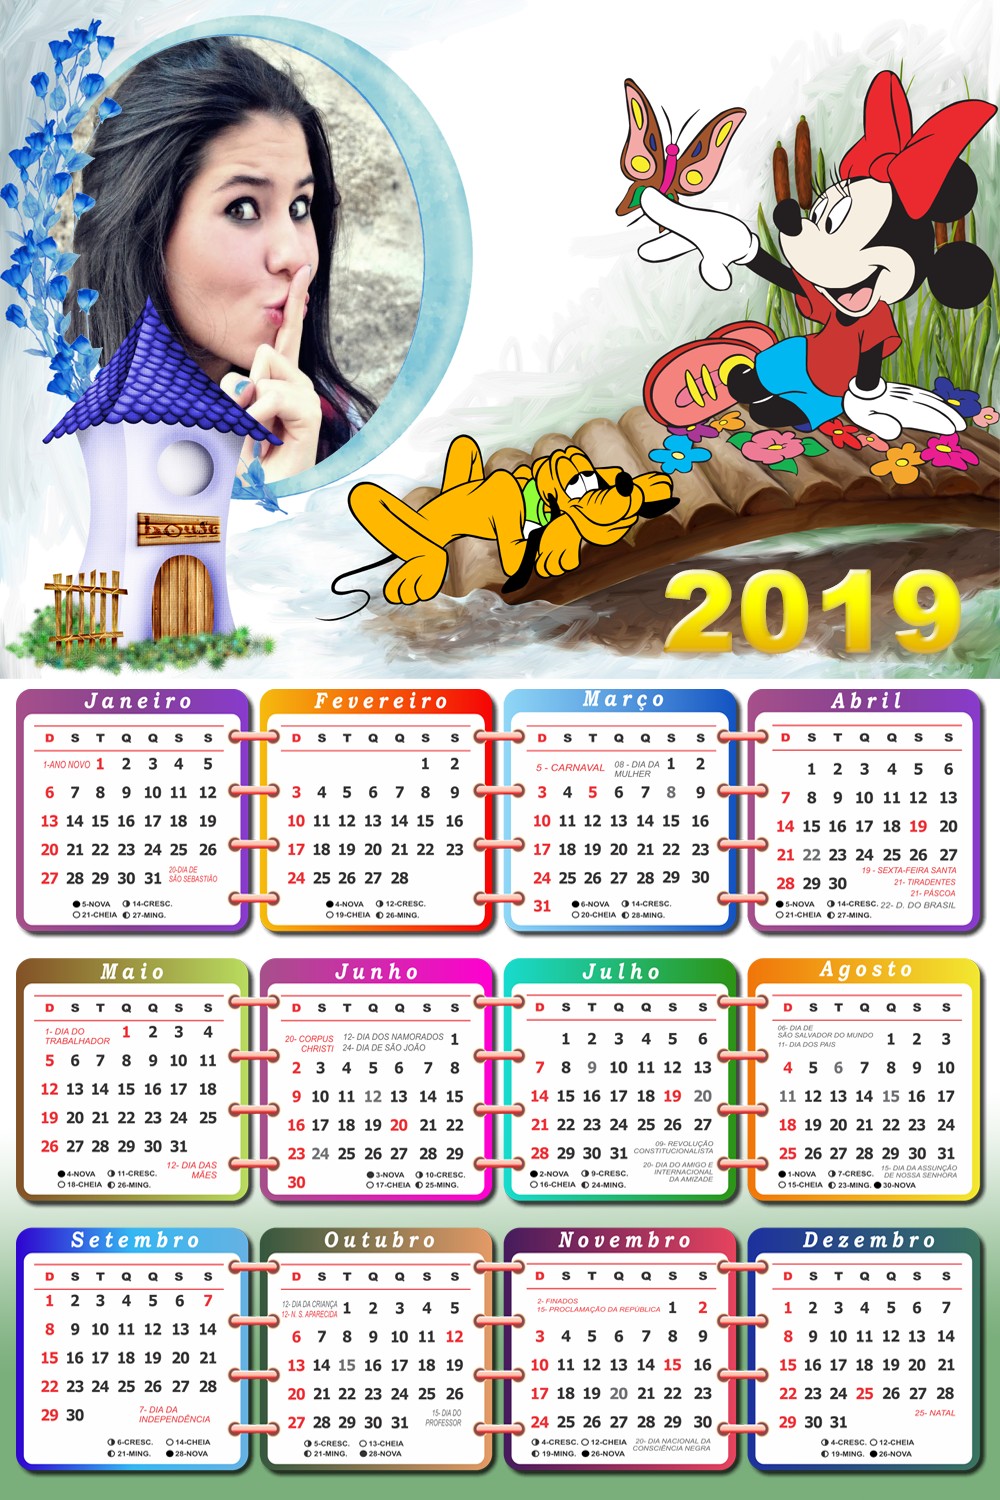 montagem-de-fotos-online-em-calendario-2019-com-minnie